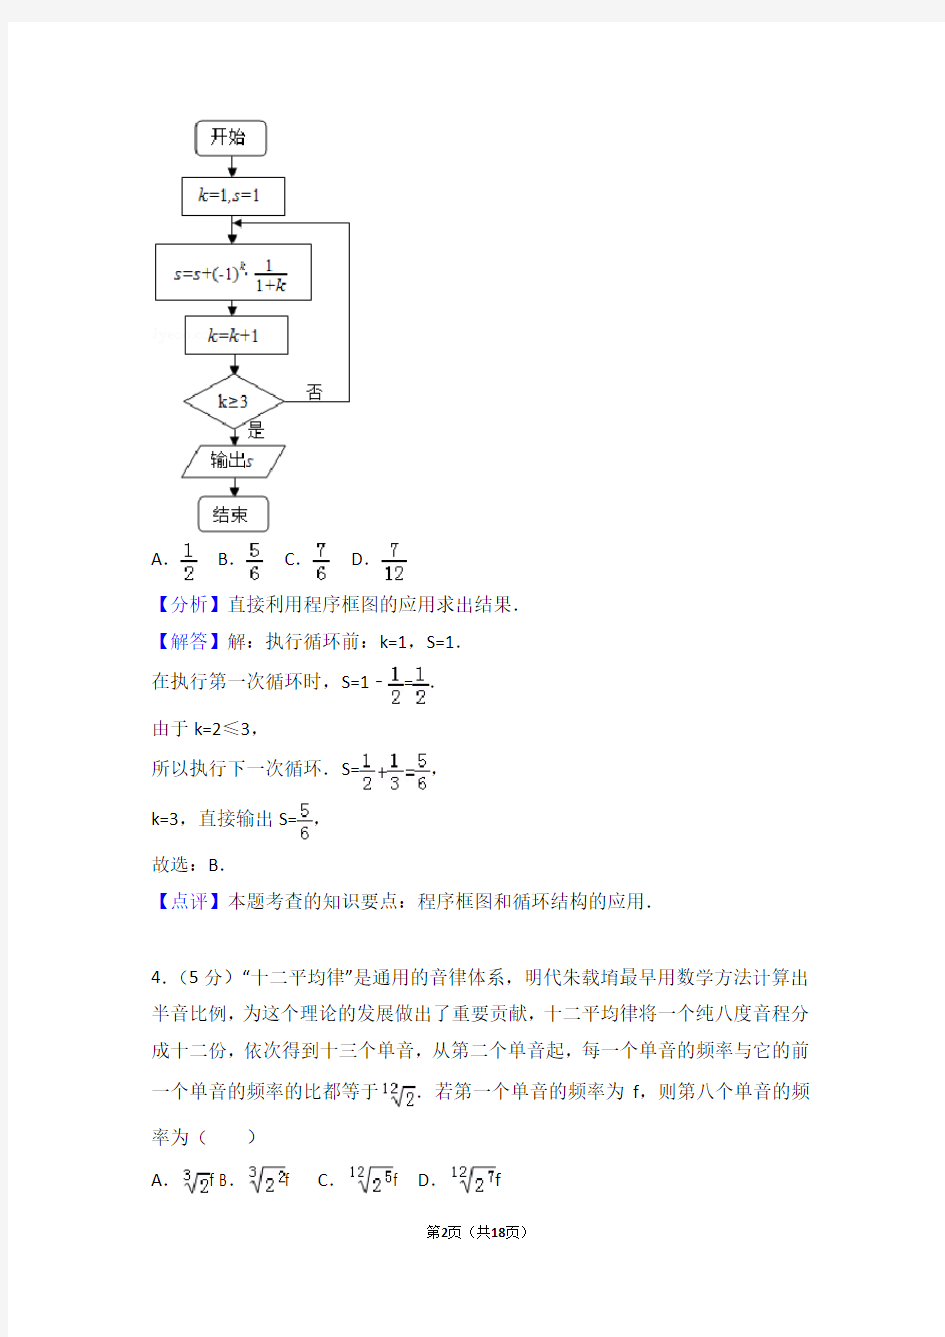 2018年北京市高考数学试卷(理科)解析